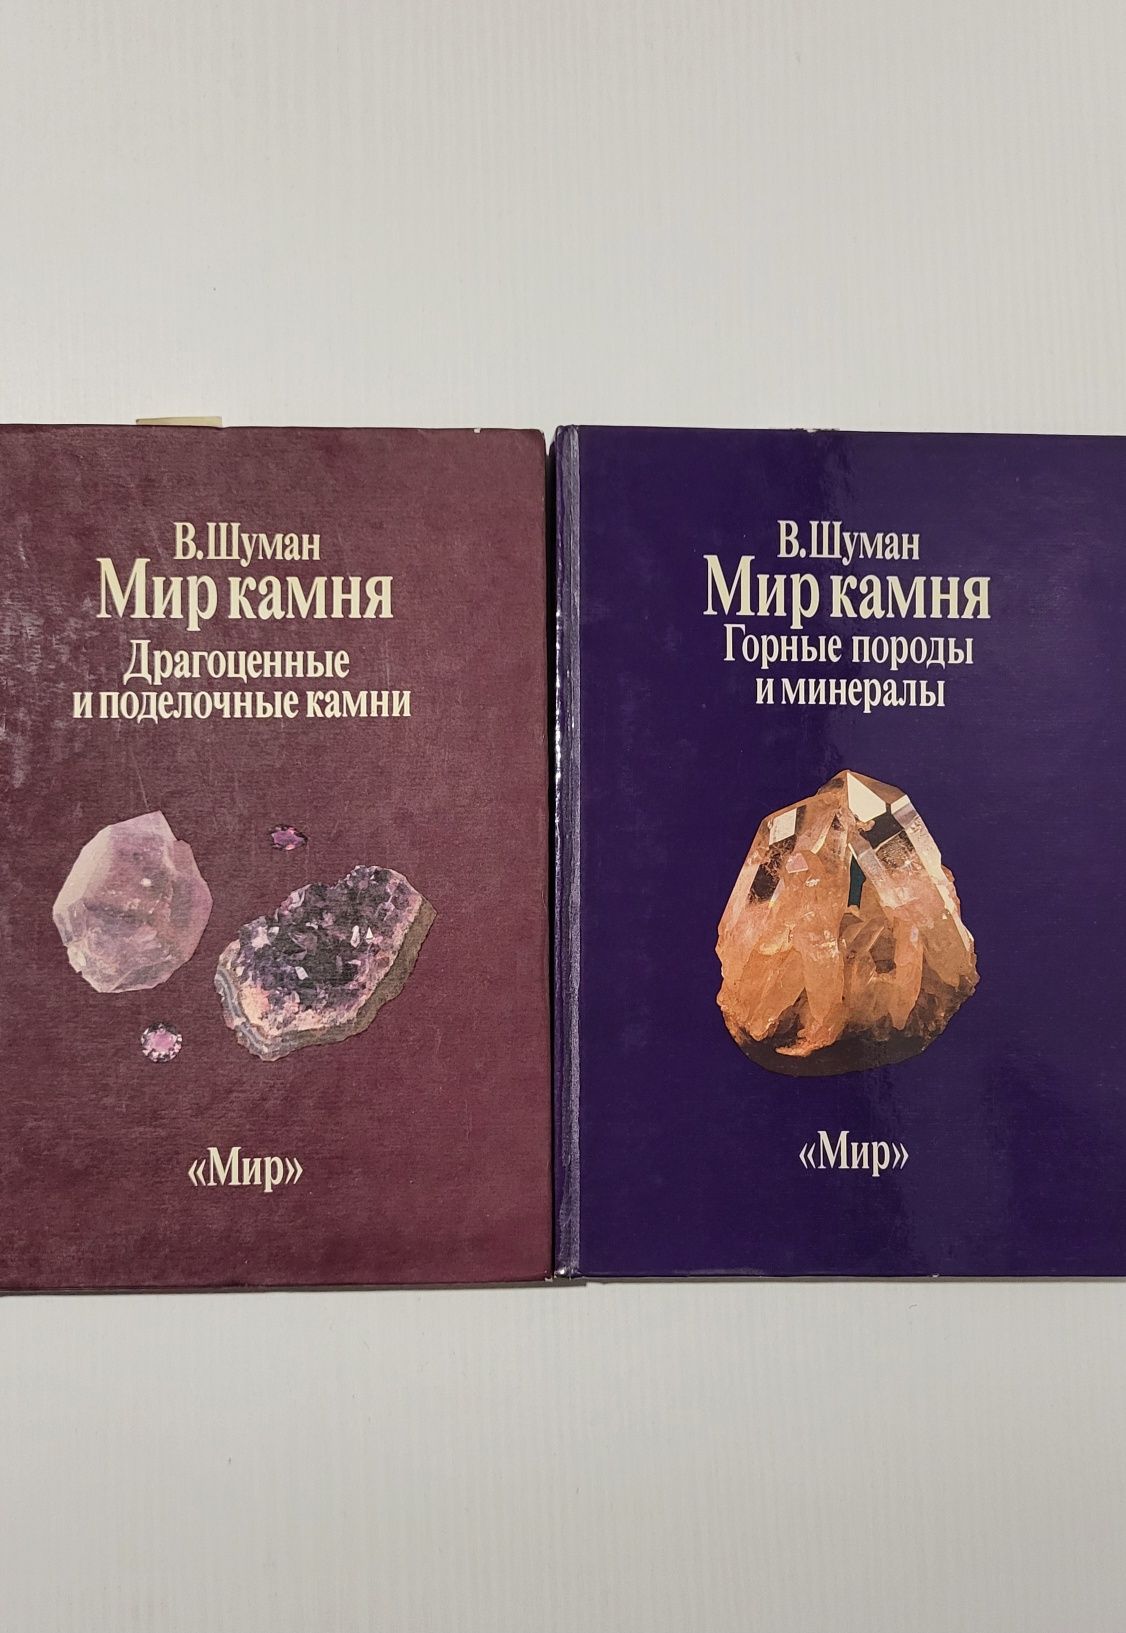 Мир камня. В.Шуман - 2 тома